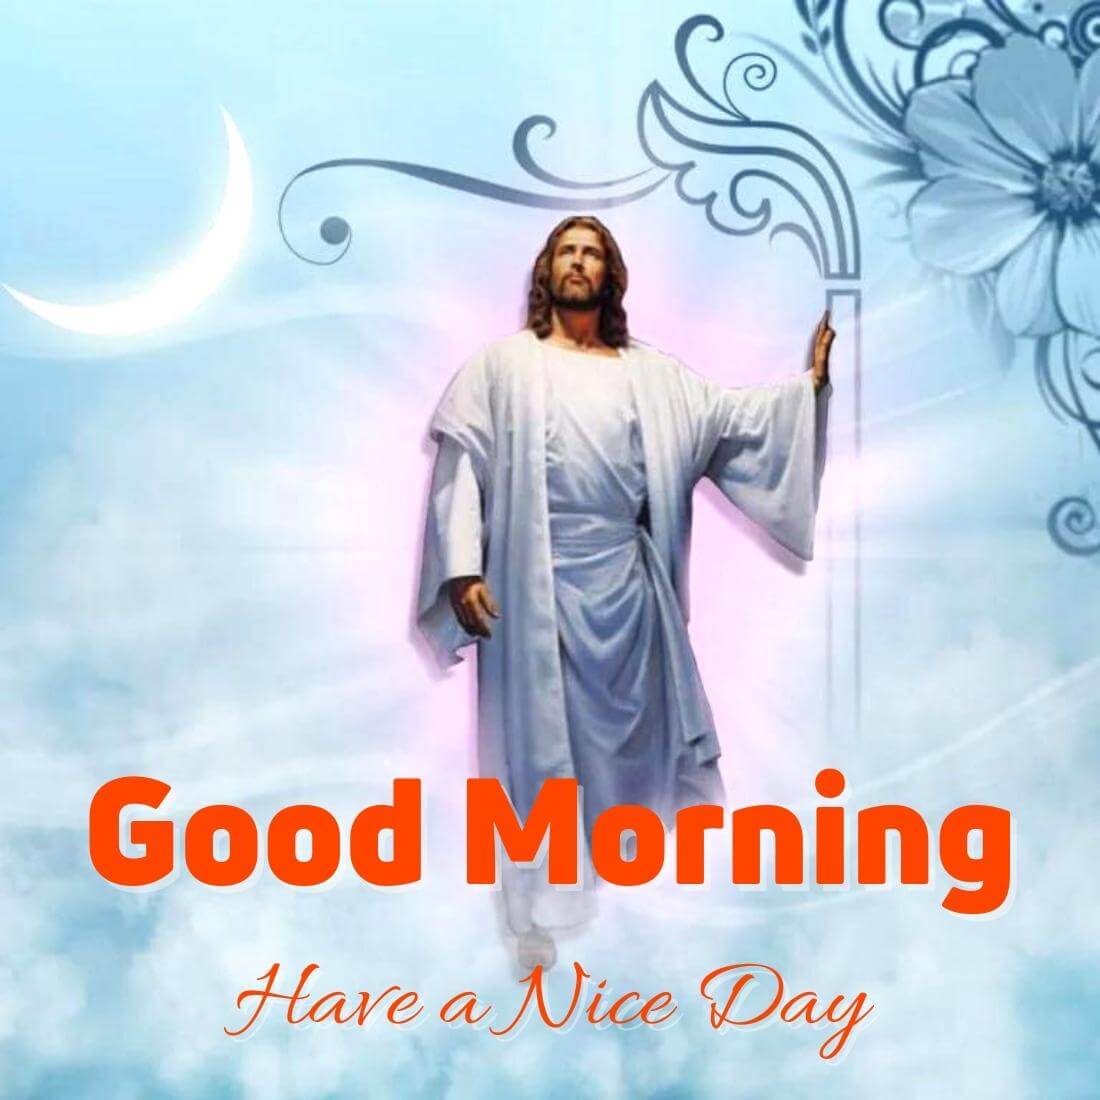 Lord Jesus good morning Wallpaper Free Download 2